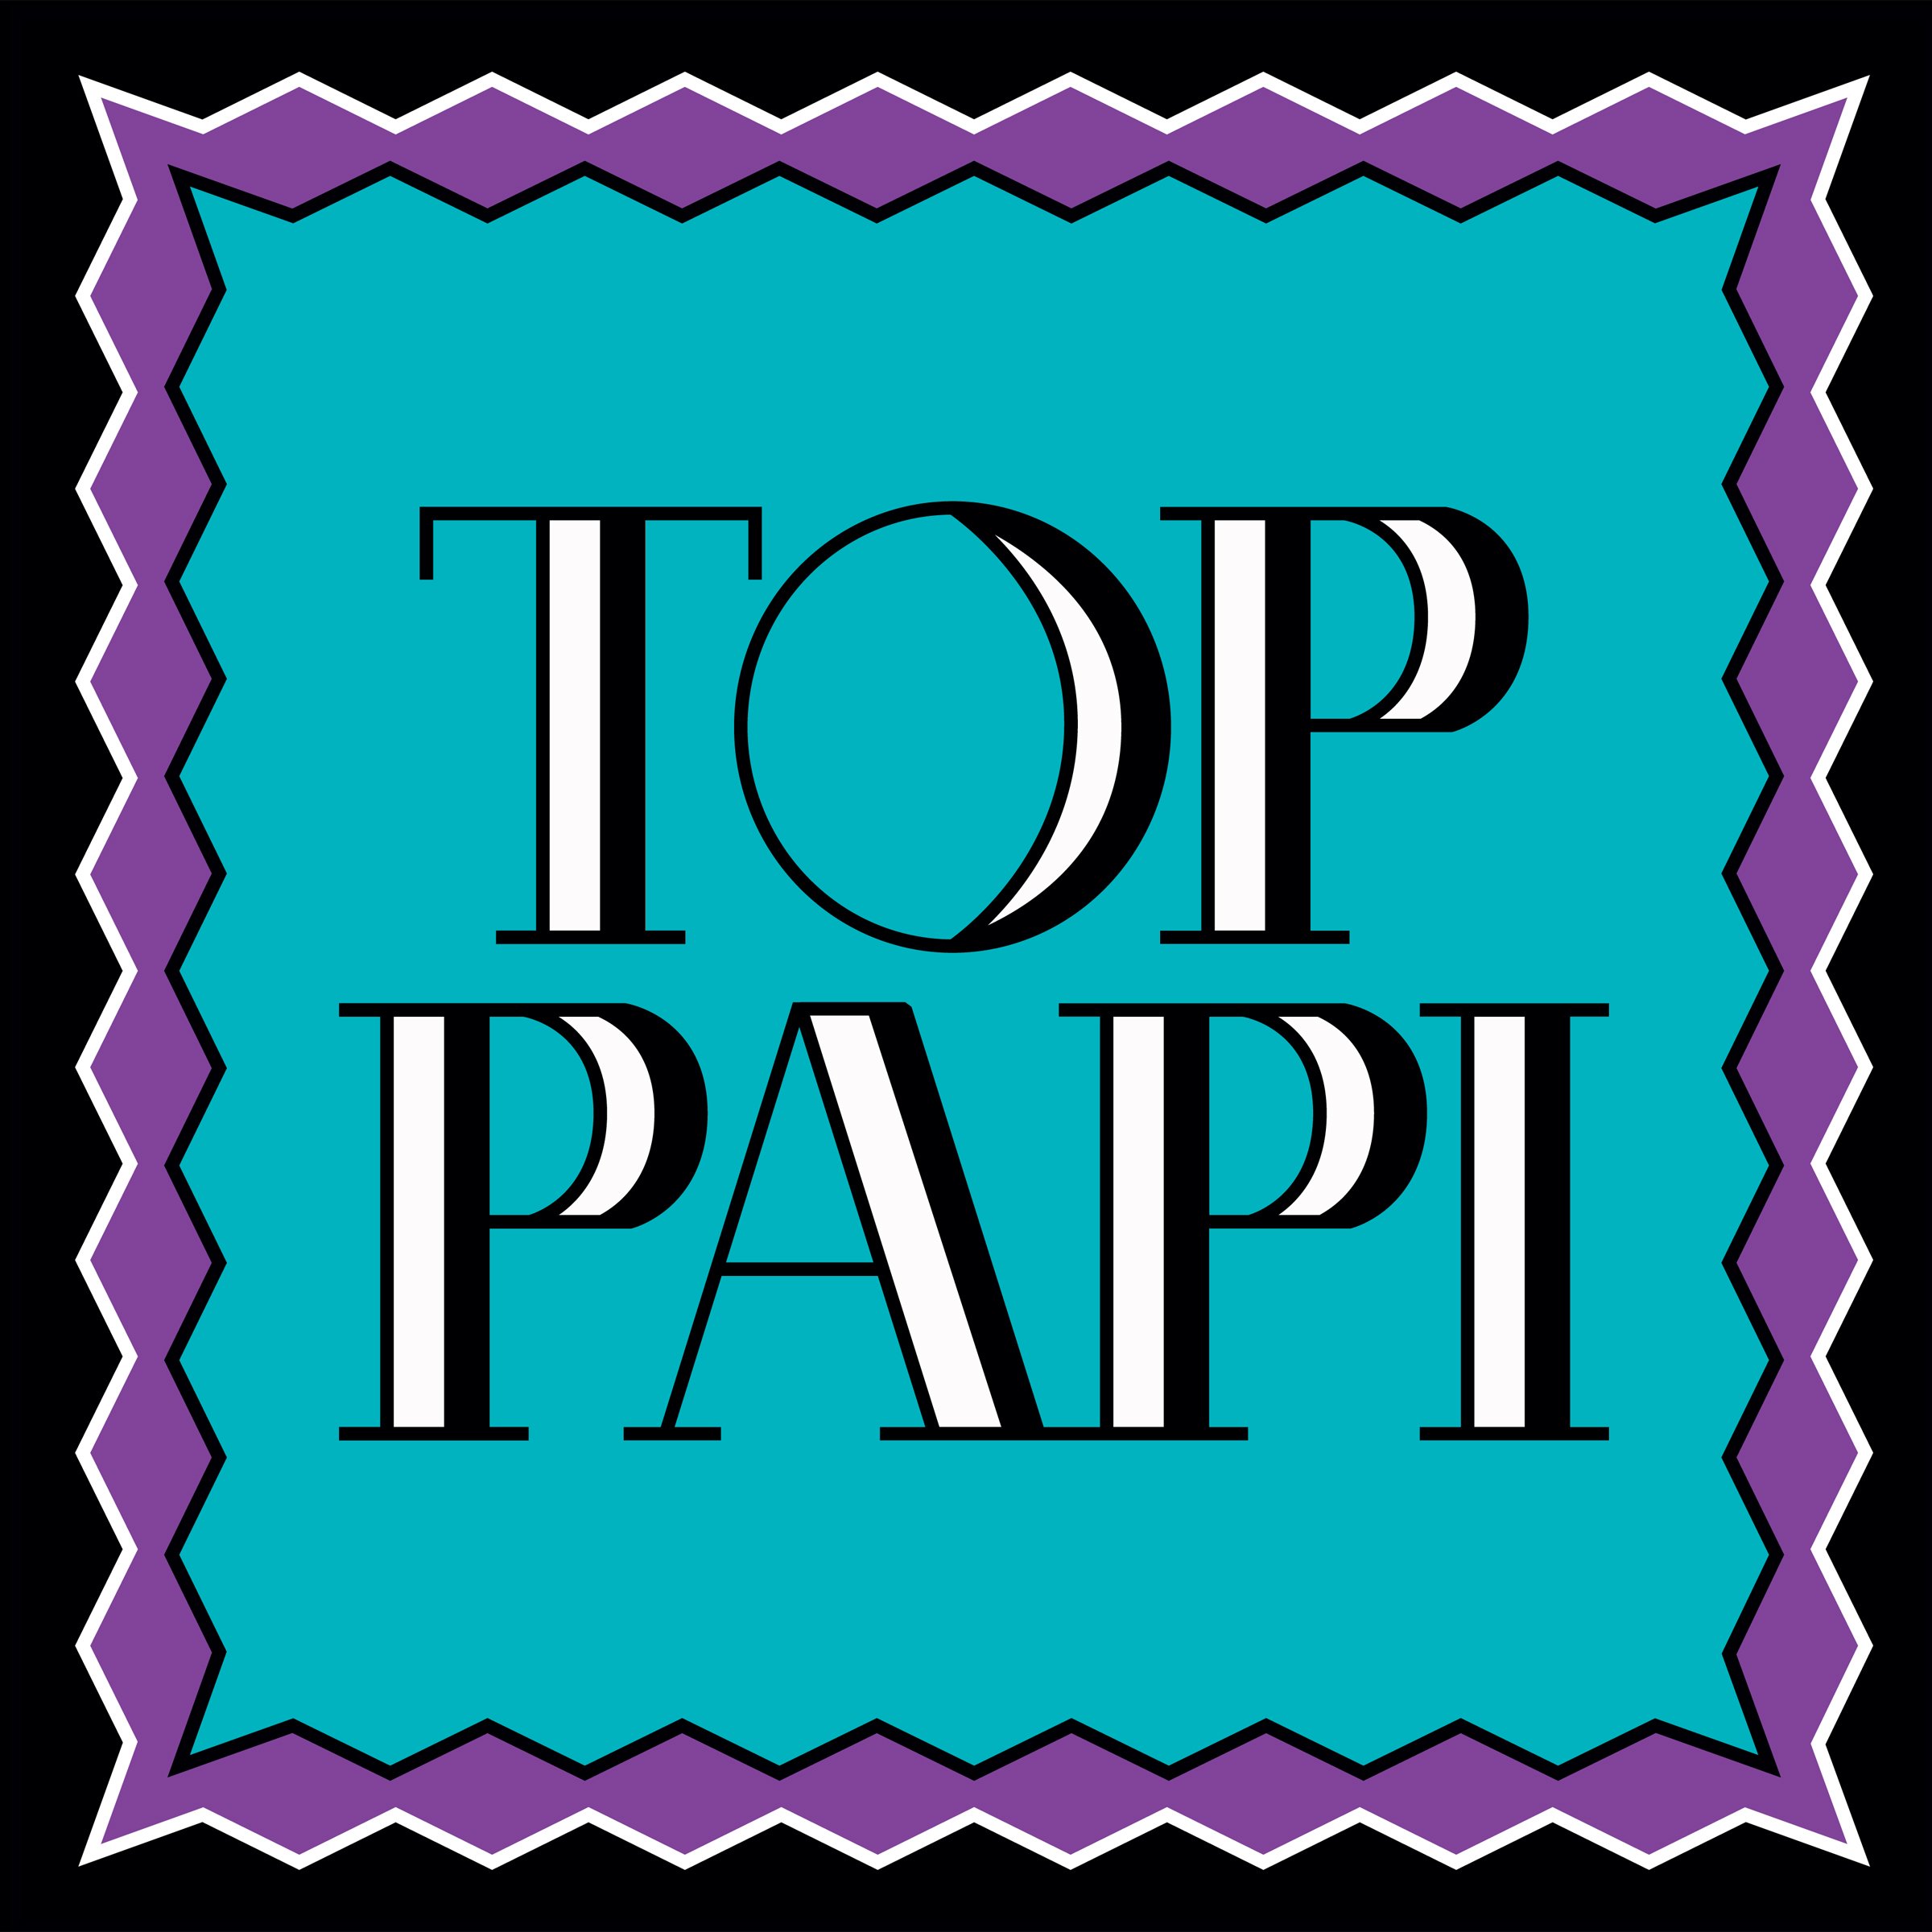 Top Papi [Vinyl LP]